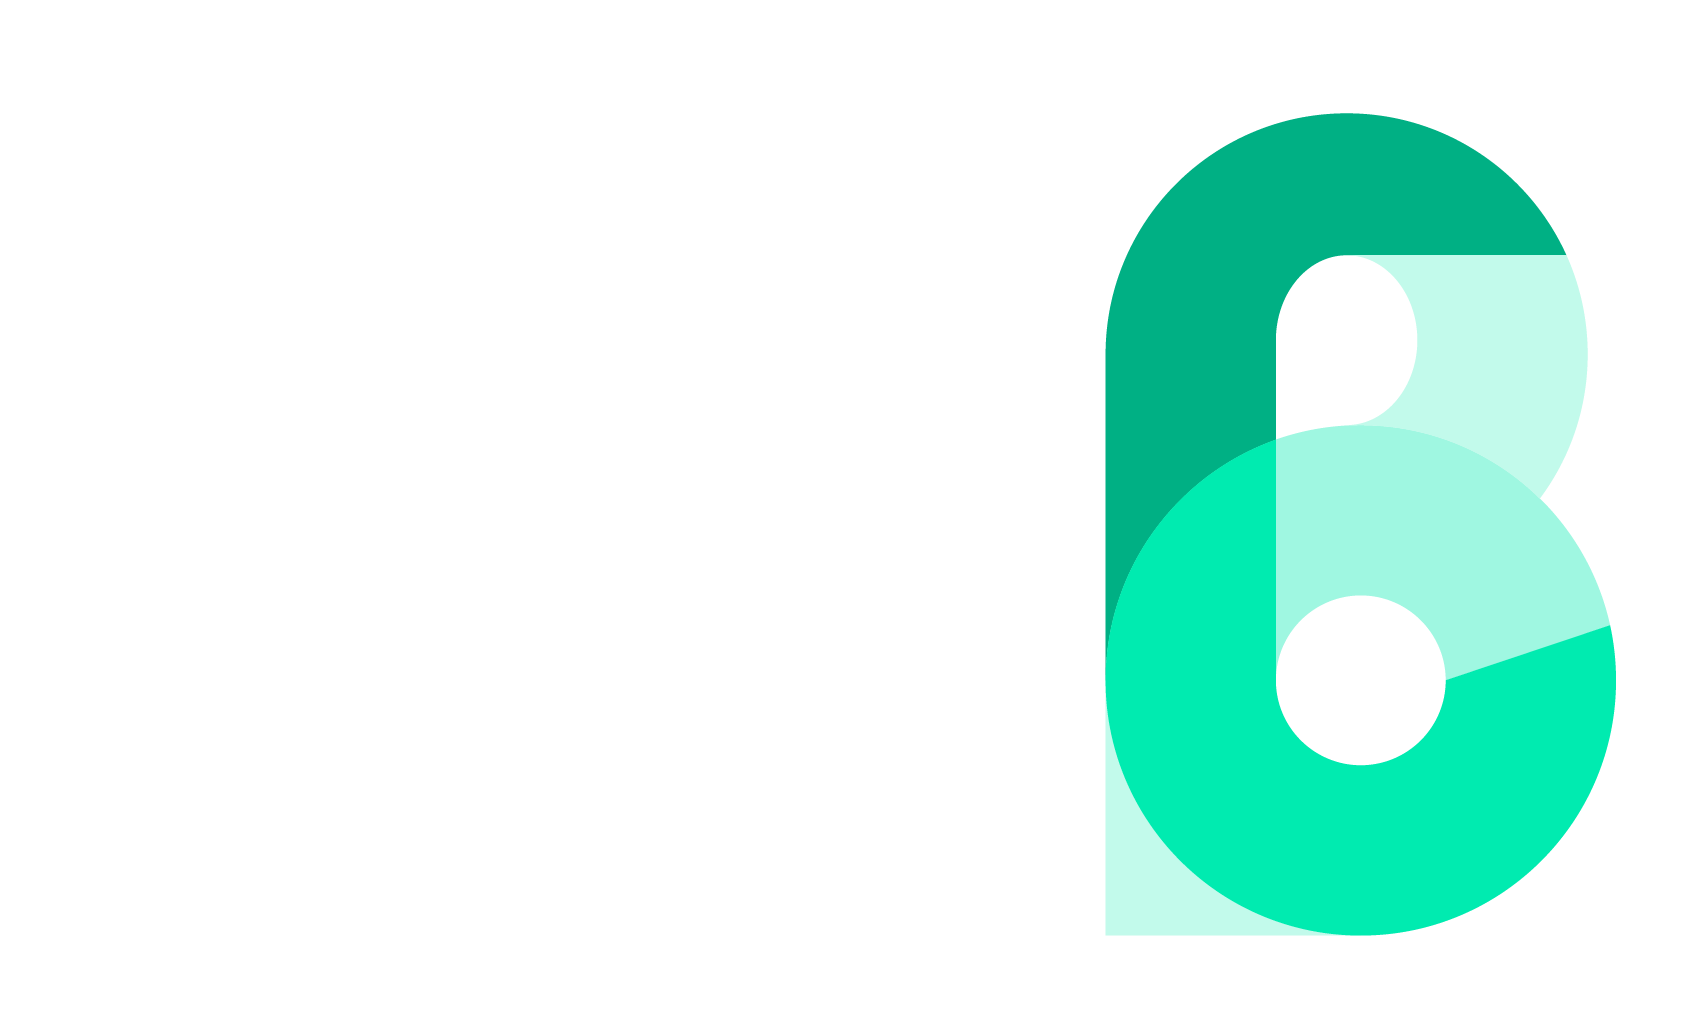 ORMET Boyacá